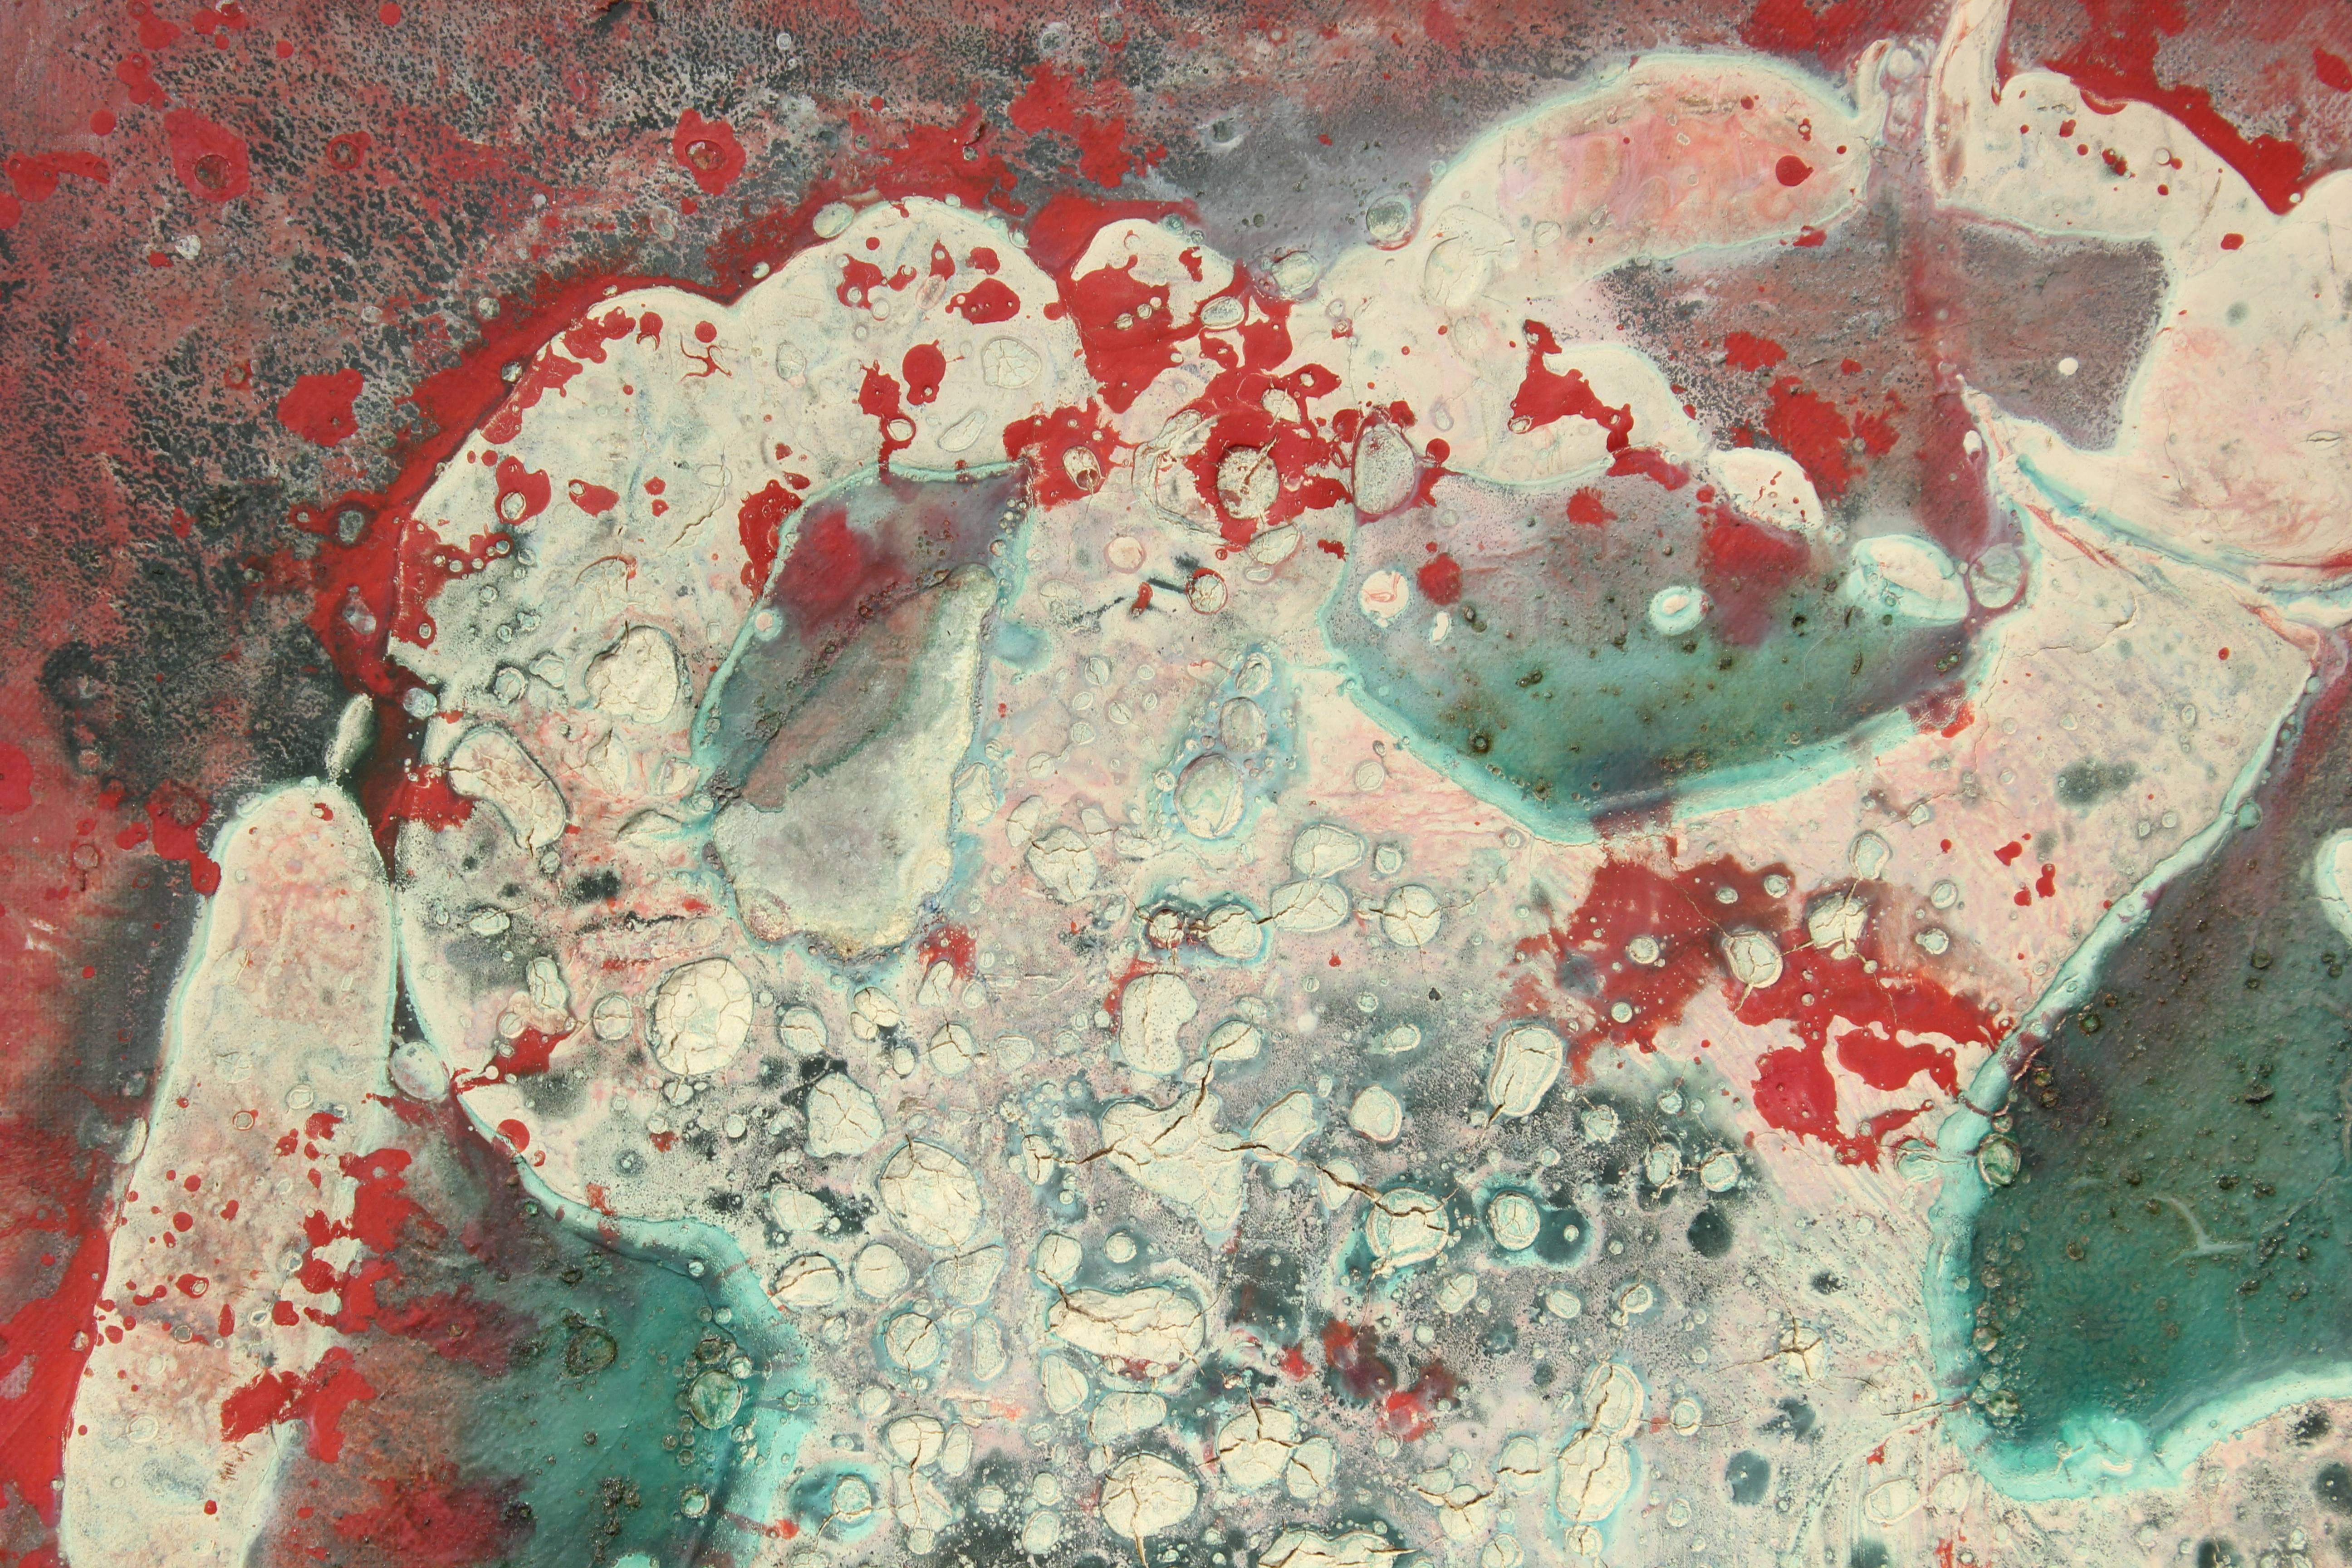 Relief abstrait amorphe texturé rouge, vert et blanc - Abstrait Art par Petitjean-Sart